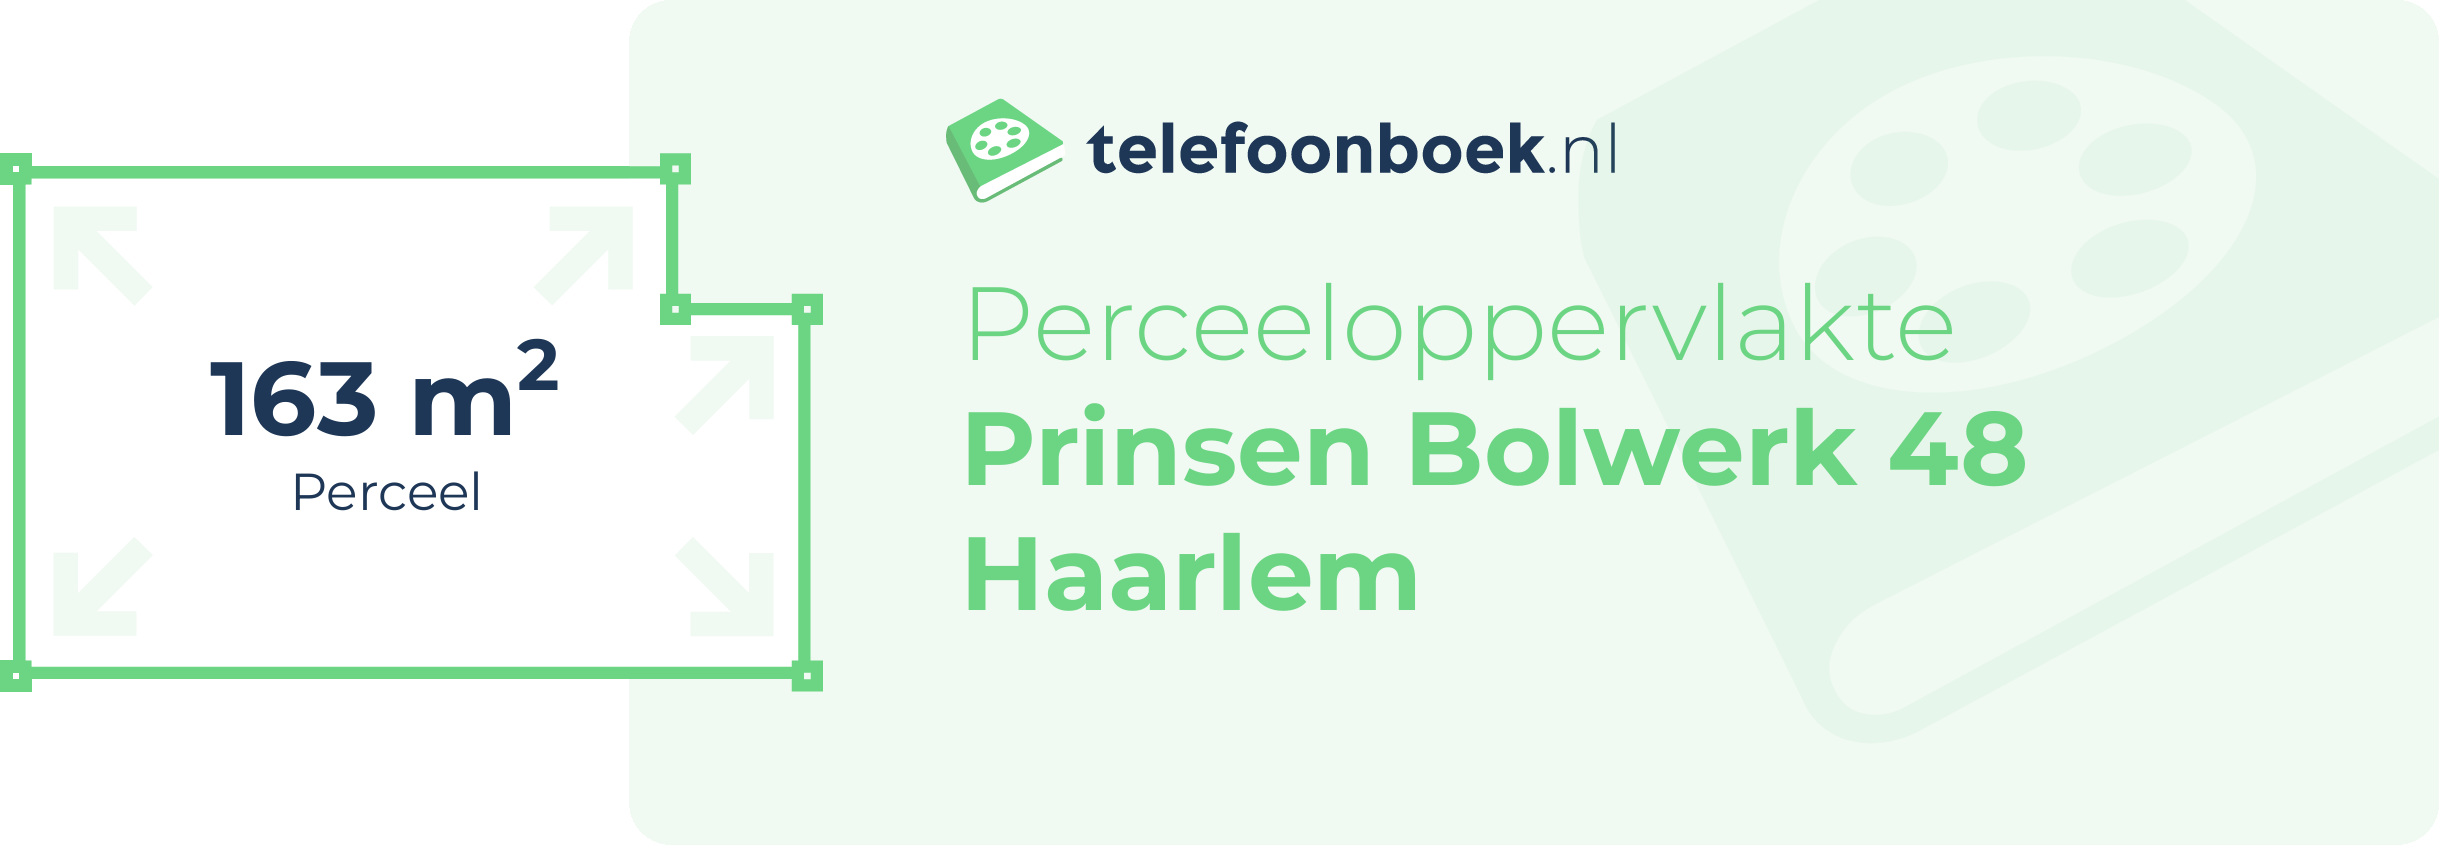 Perceeloppervlakte Prinsen Bolwerk 48 Haarlem